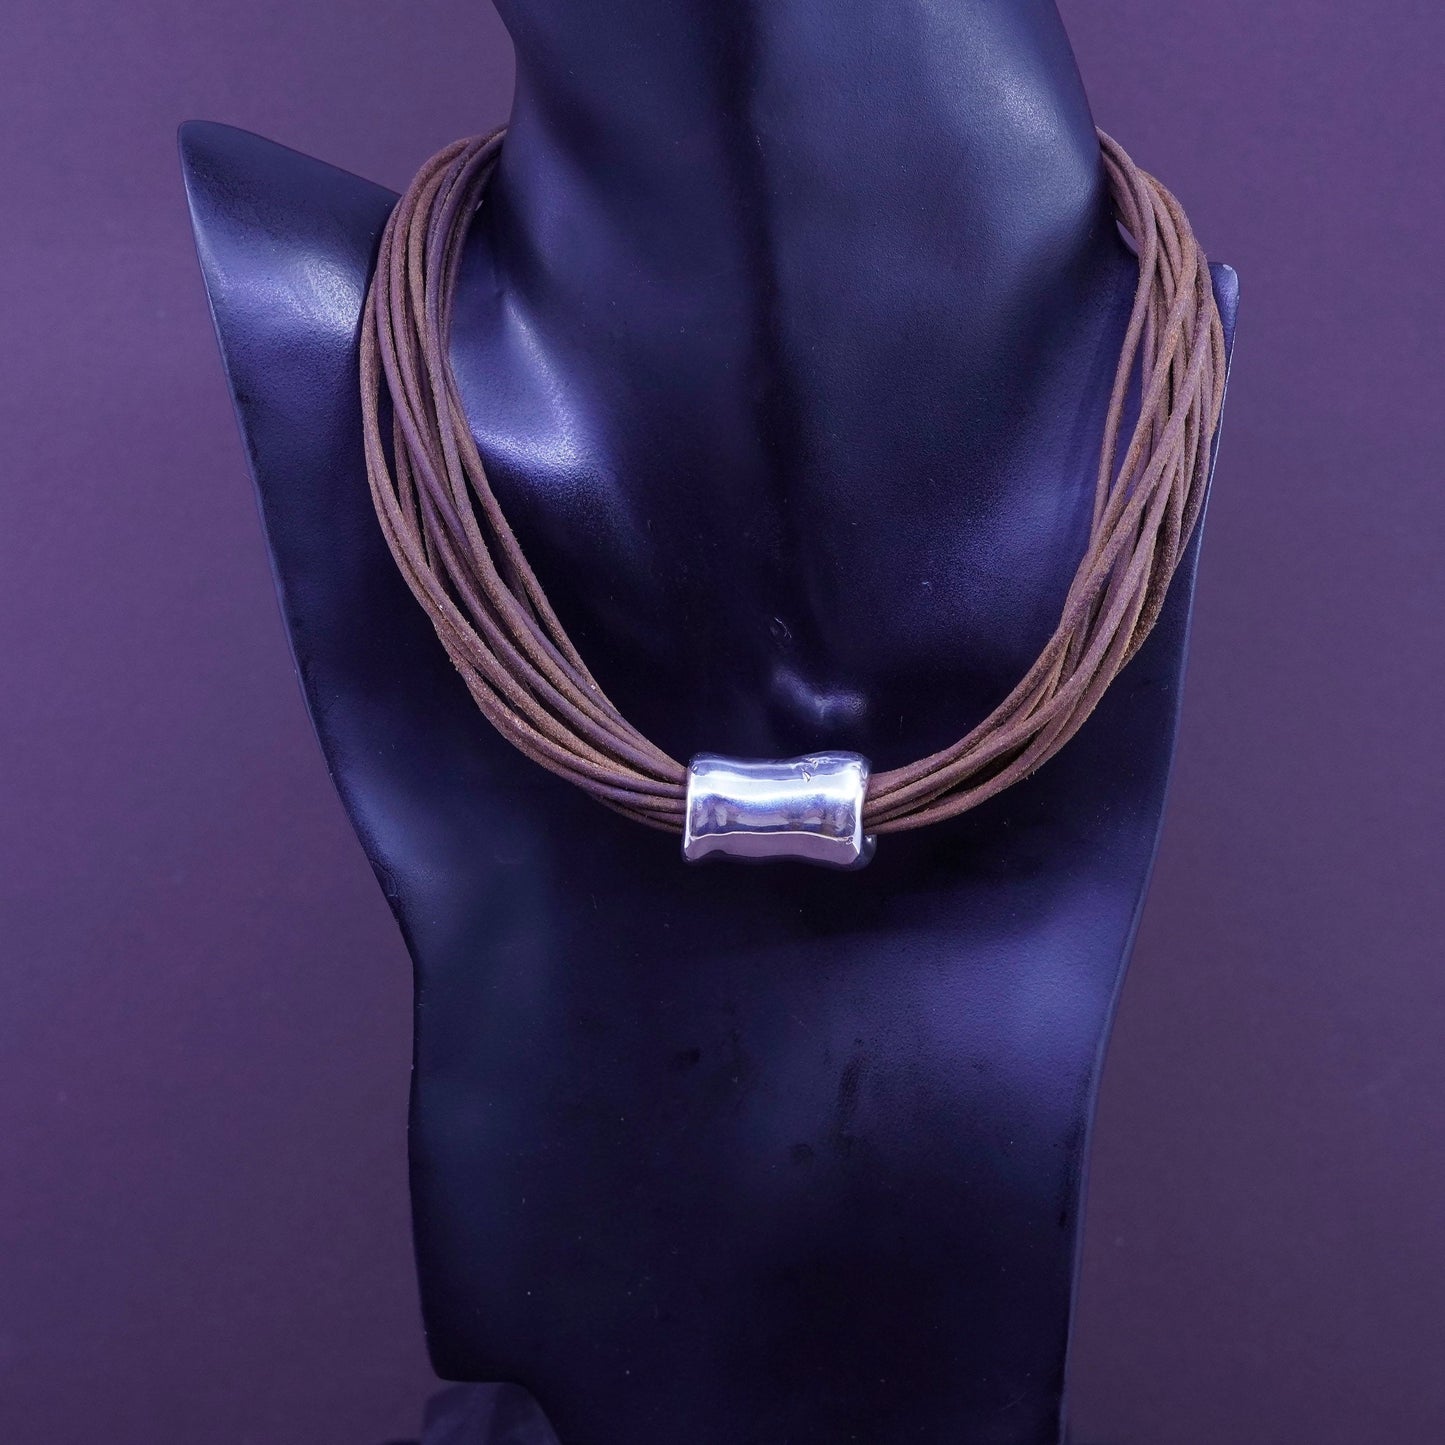 15”, vtg Sterling Silver Multi Strand brown Leather Necklace Slide 925 Pendant